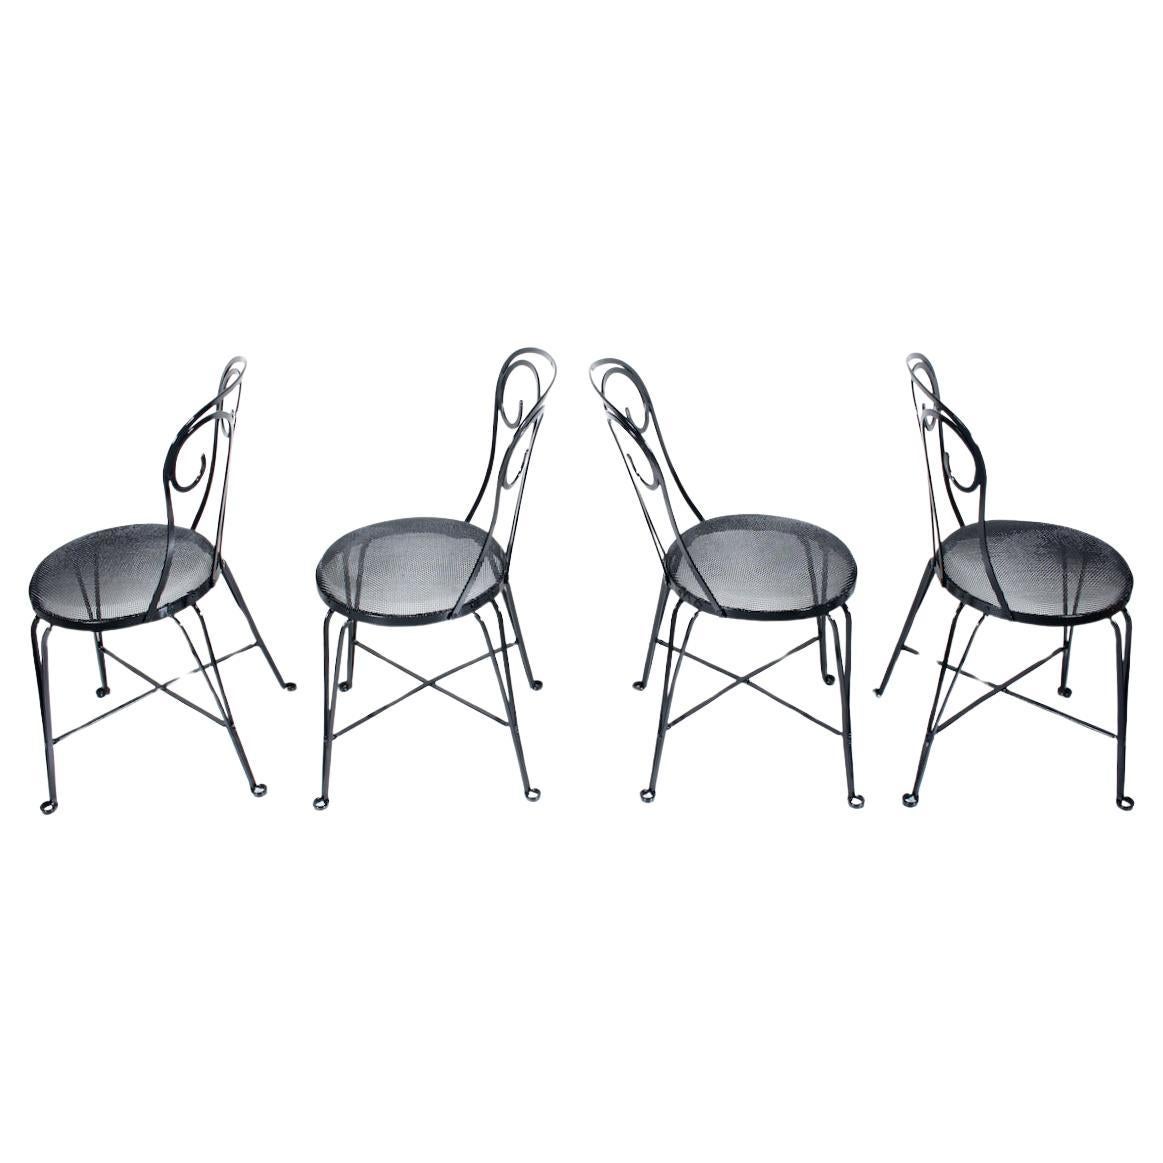 Ensemble de 4 chaises de salle à manger Art Déco en fer émaillé noir pour cafés et bistrots.  Avec une structure en fer forgé émaillé noir, un support croisé, un dossier Fleur de Lis arrondi, des sièges confortables en fil de fer à ressort de 14